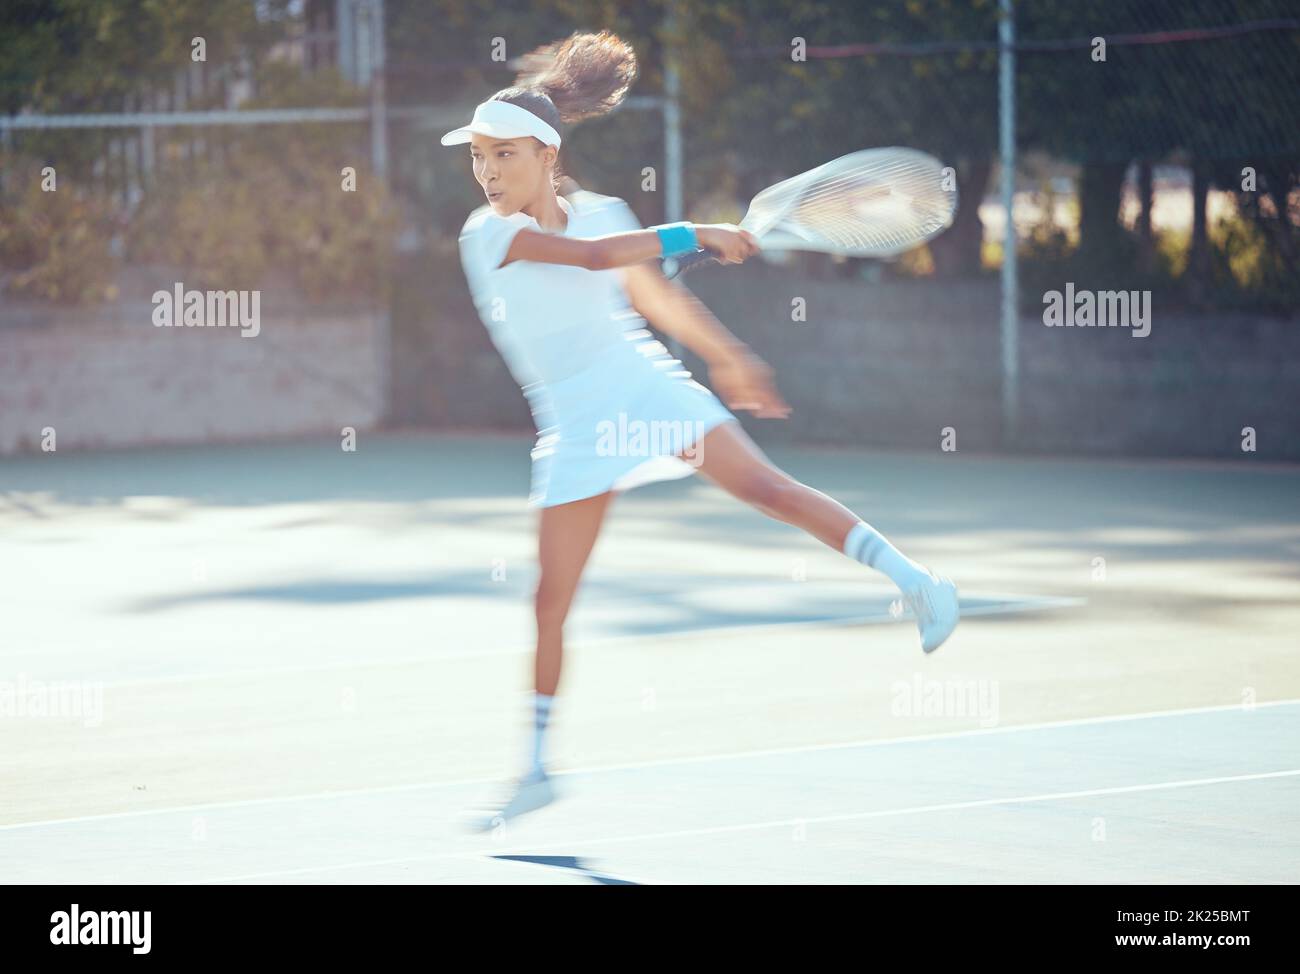 Tennis, atleta d'azione e donna attiva che gioca a sport, fitness e allenamento sul campo da gioco. Allenatore, motion e tennista professionista Foto Stock